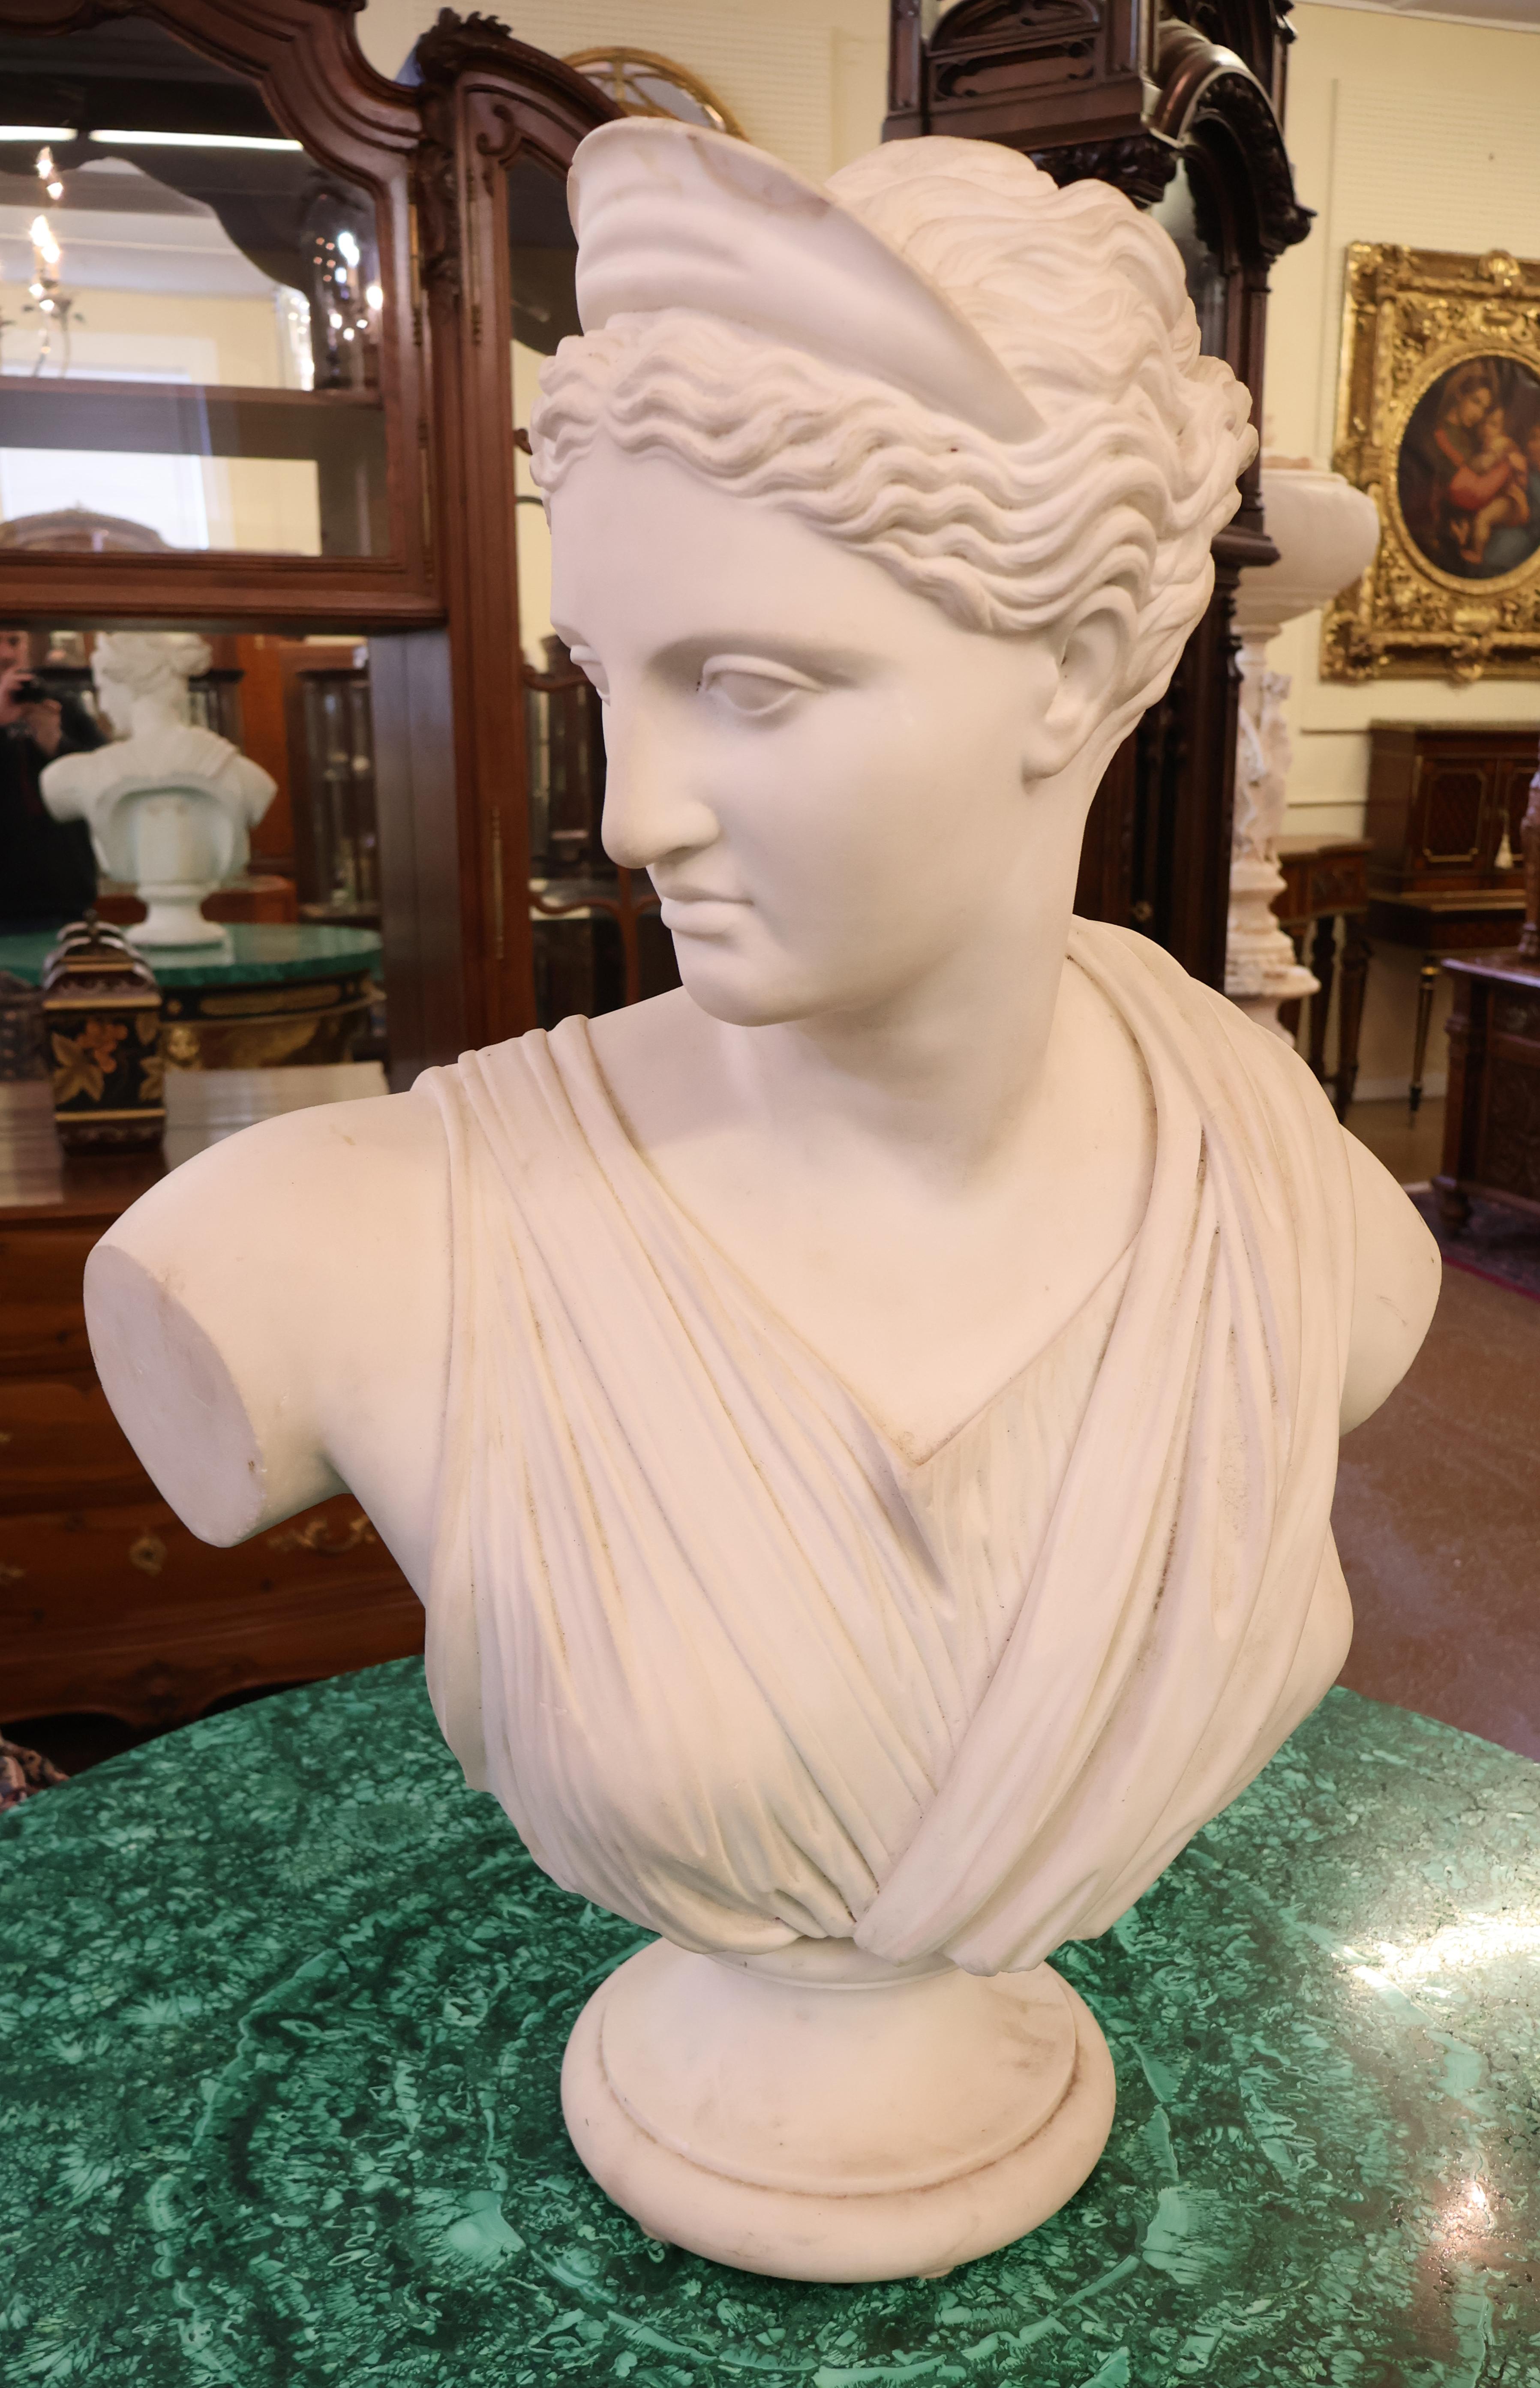 Buste de femme romaine italienne Pietro Bazzanti du 19ème siècle en marbre de Carrare

Dimensions : 31